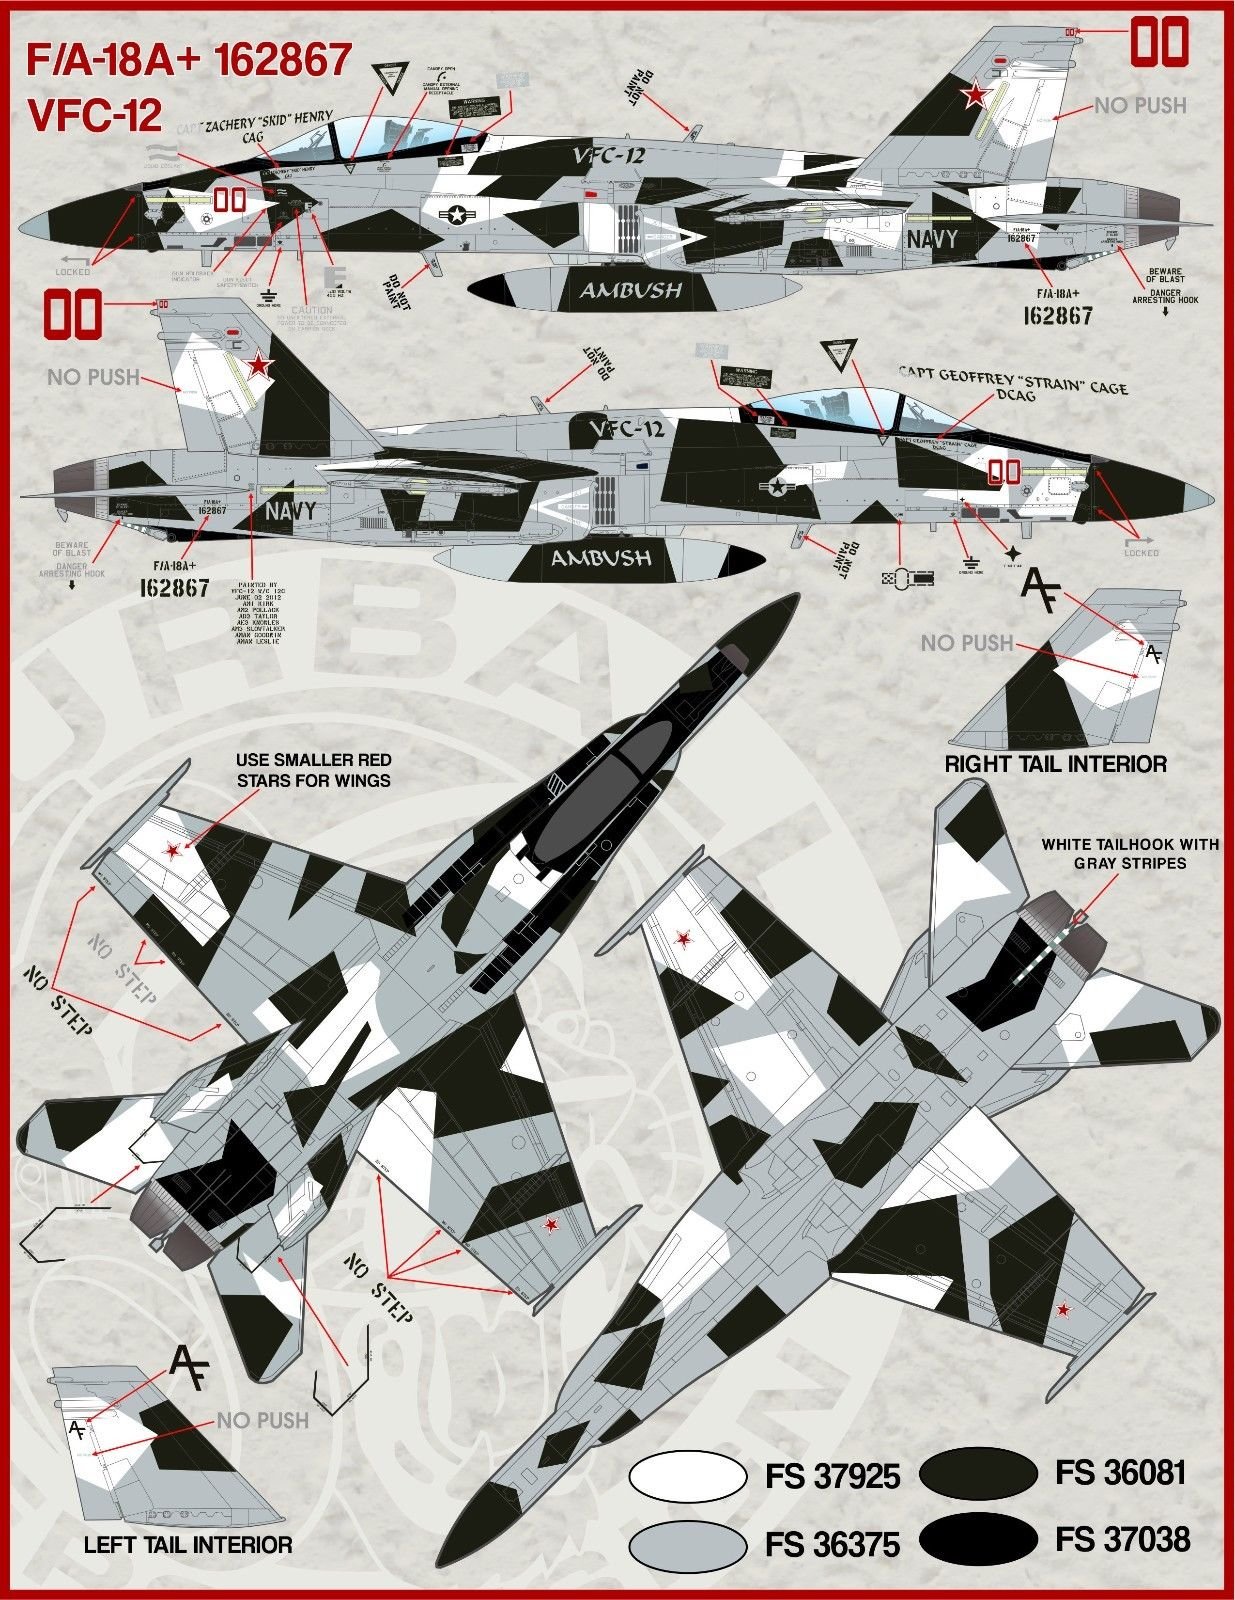 1/48 F/A-18 大黄蜂航空联队全明星"2014海洋航展回顾" - 点击图像关闭